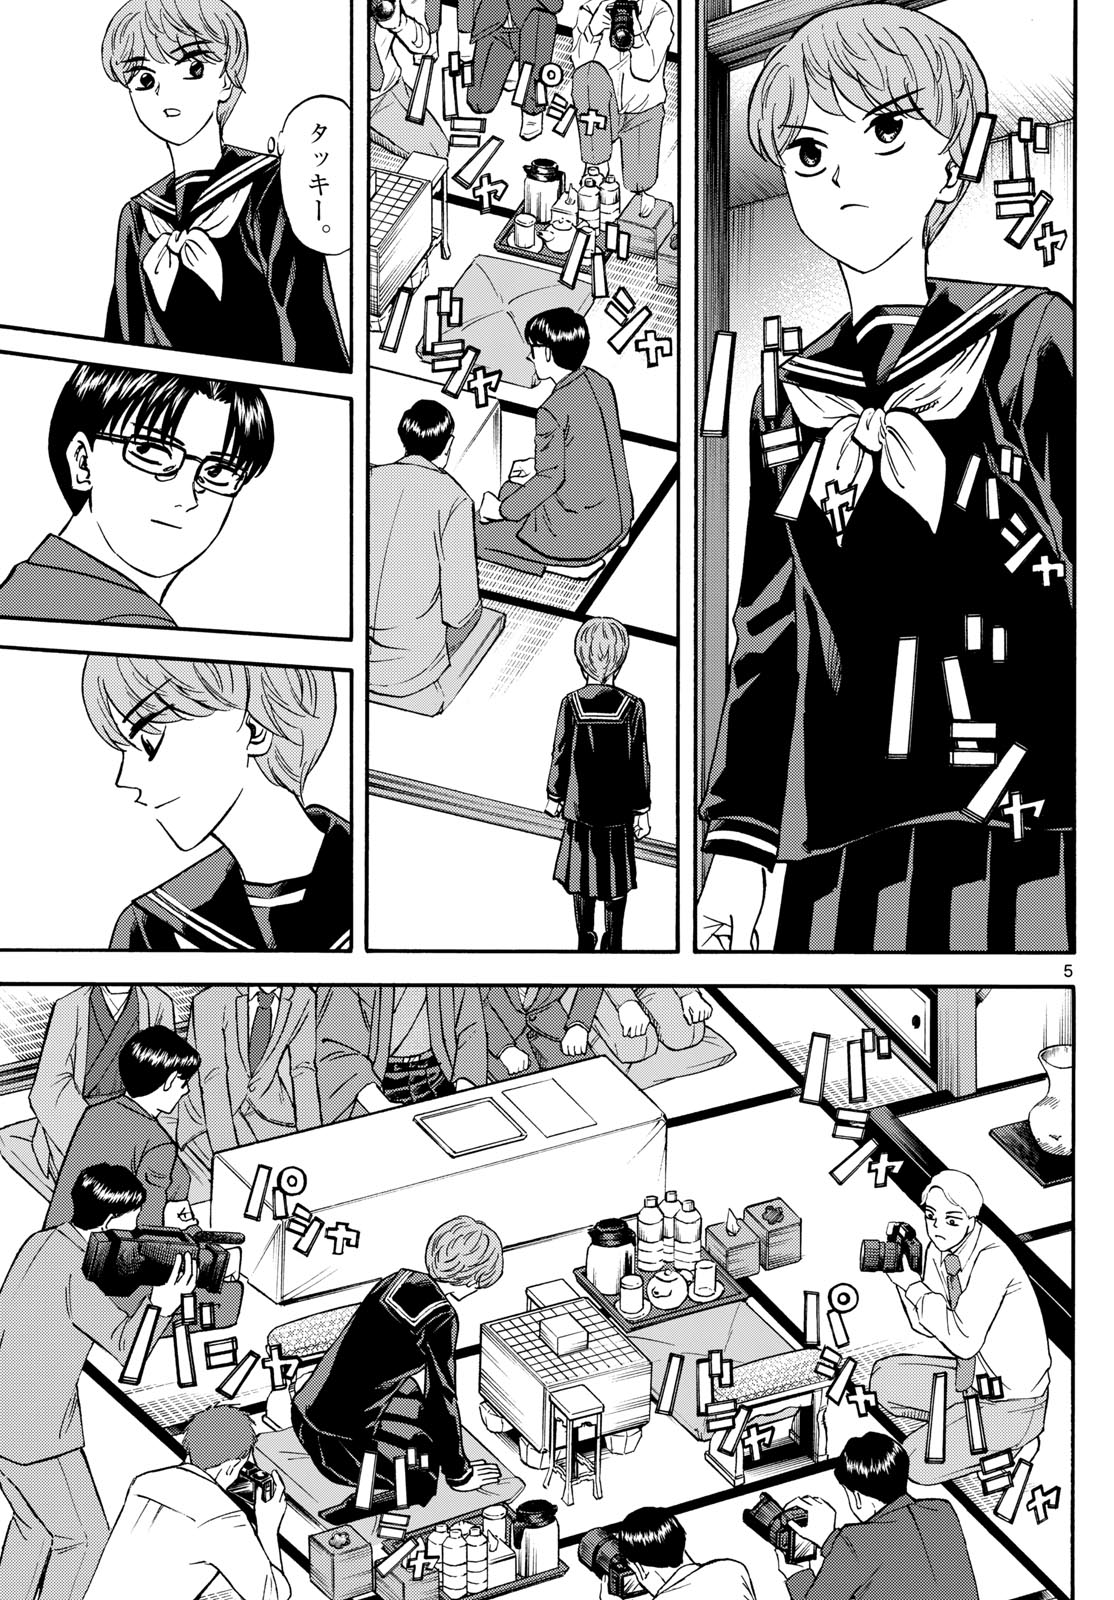 Tatsu to Ichigo - Chapter 175 - Page 5